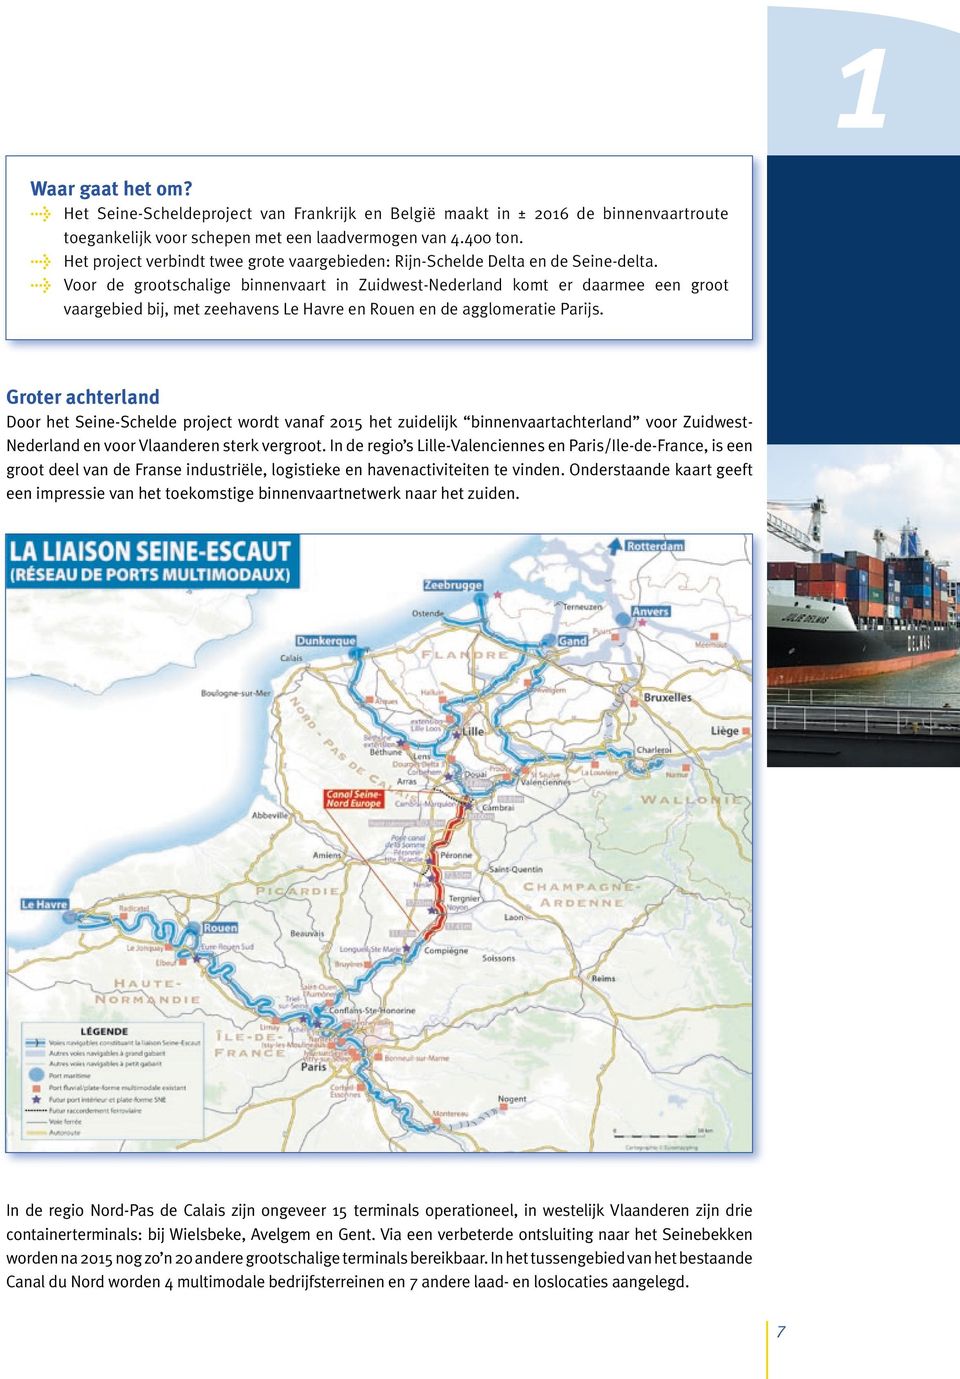 > Voor de grootschalige binnenvaart in Zuidwest-Nederland komt er daarmee een groot vaargebied bij, met zeehavens Le Havre en Rouen en de agglomeratie Parijs.